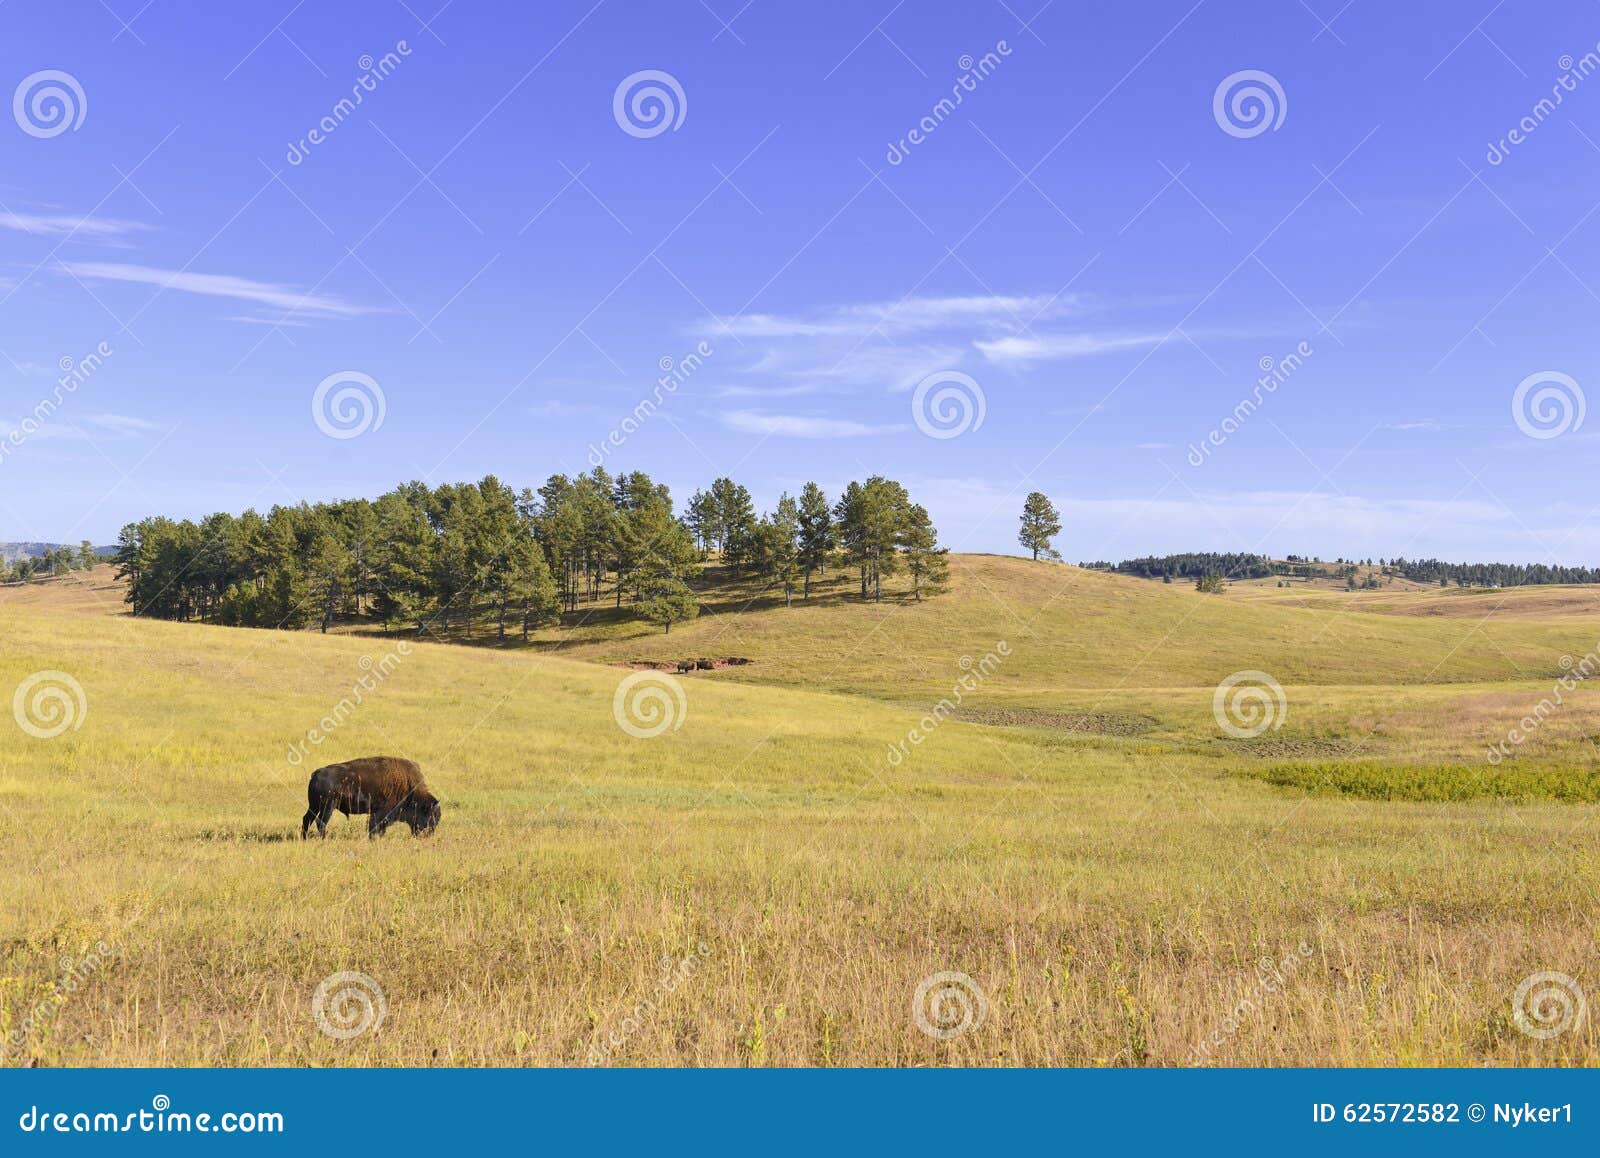 bison in grasslands, wind cave national park, south dakota